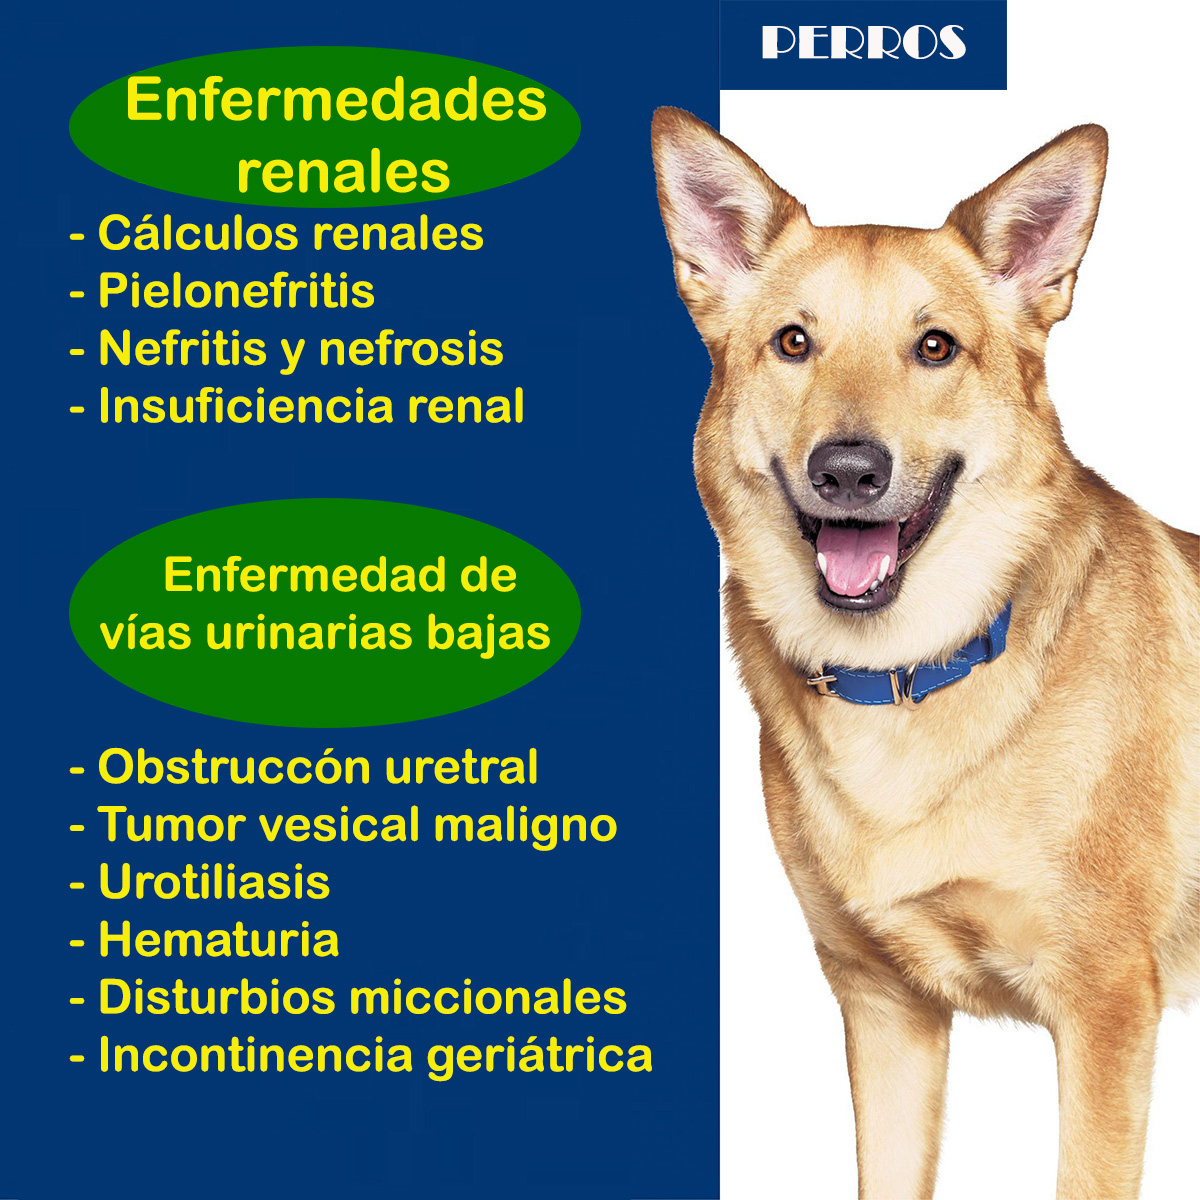 consulta veterinaria a domicilio enfermedades renales perros